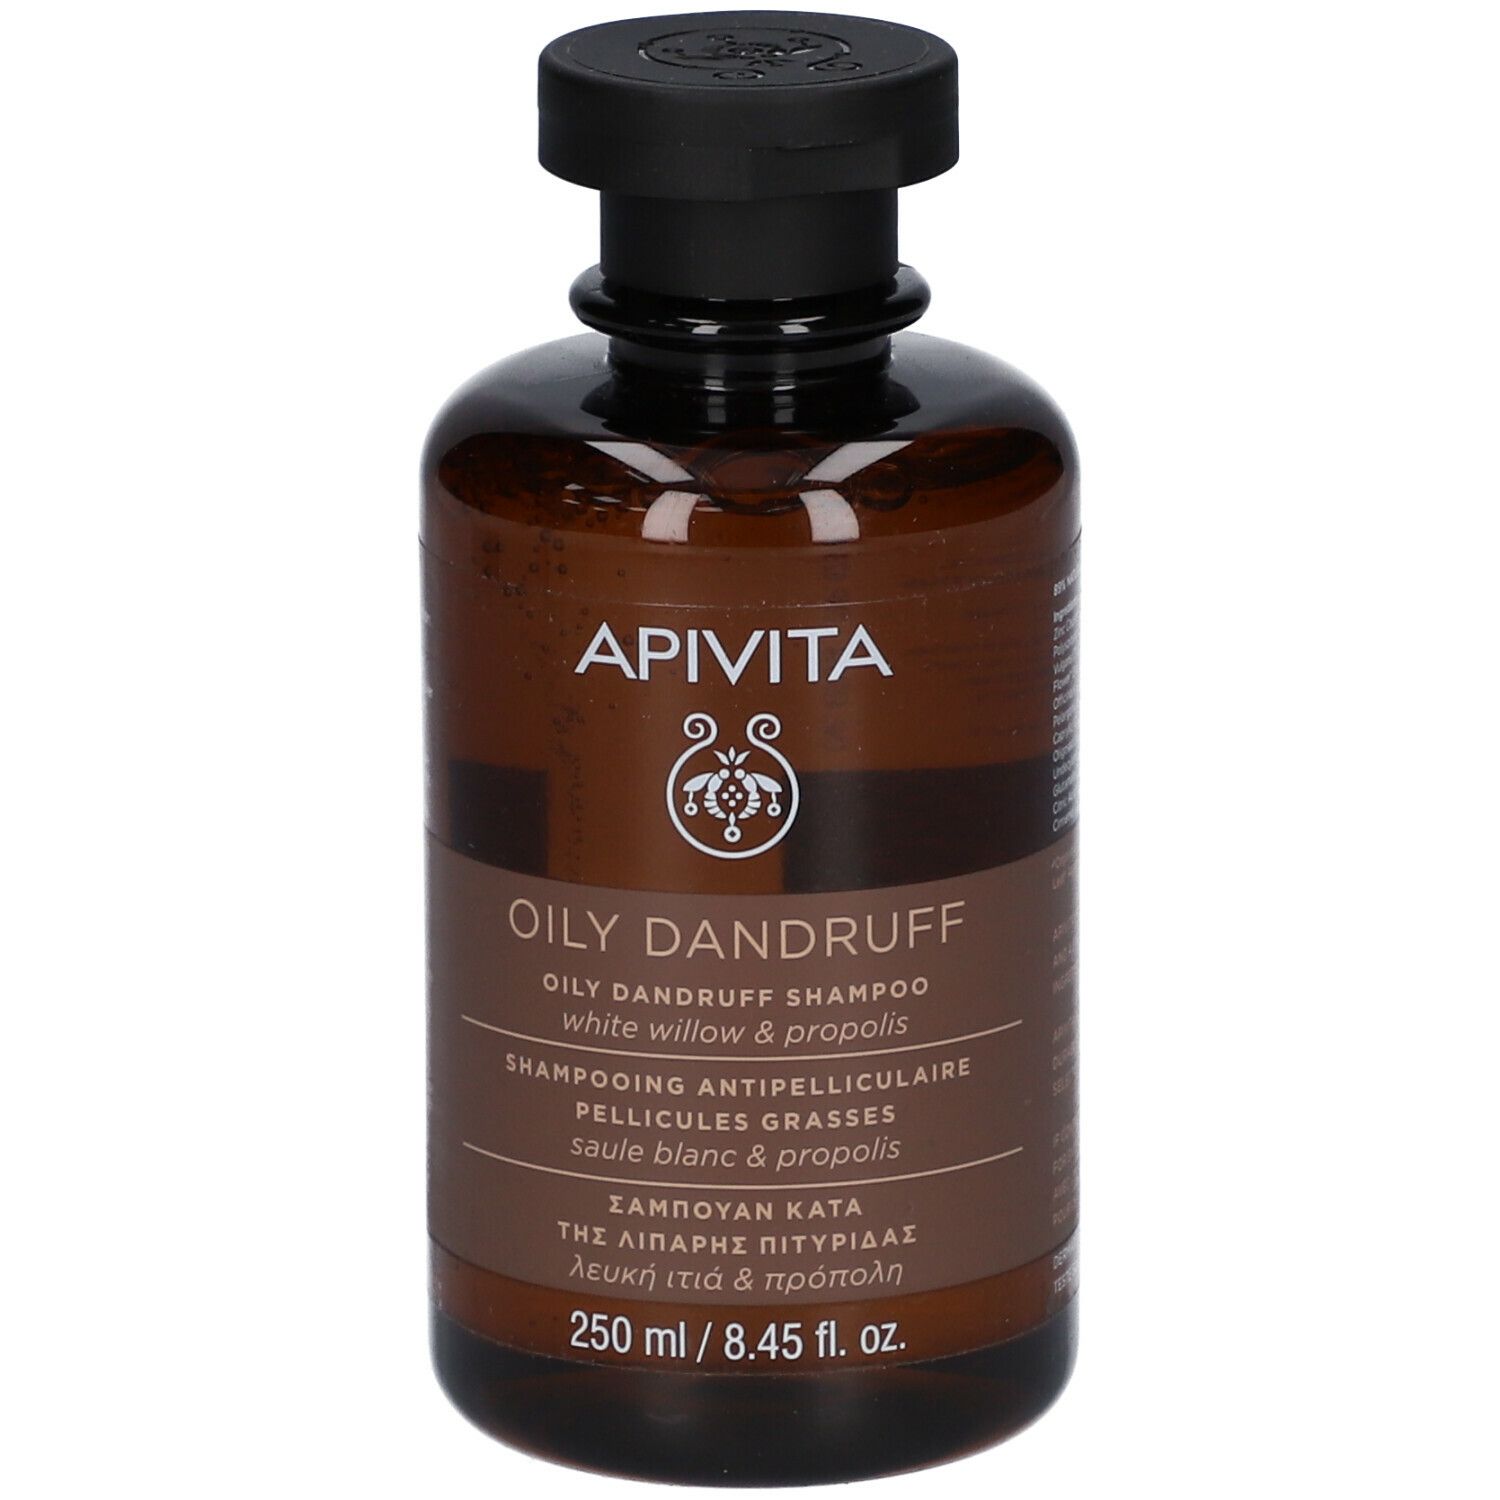 Apivita shampooing antipelliculaire